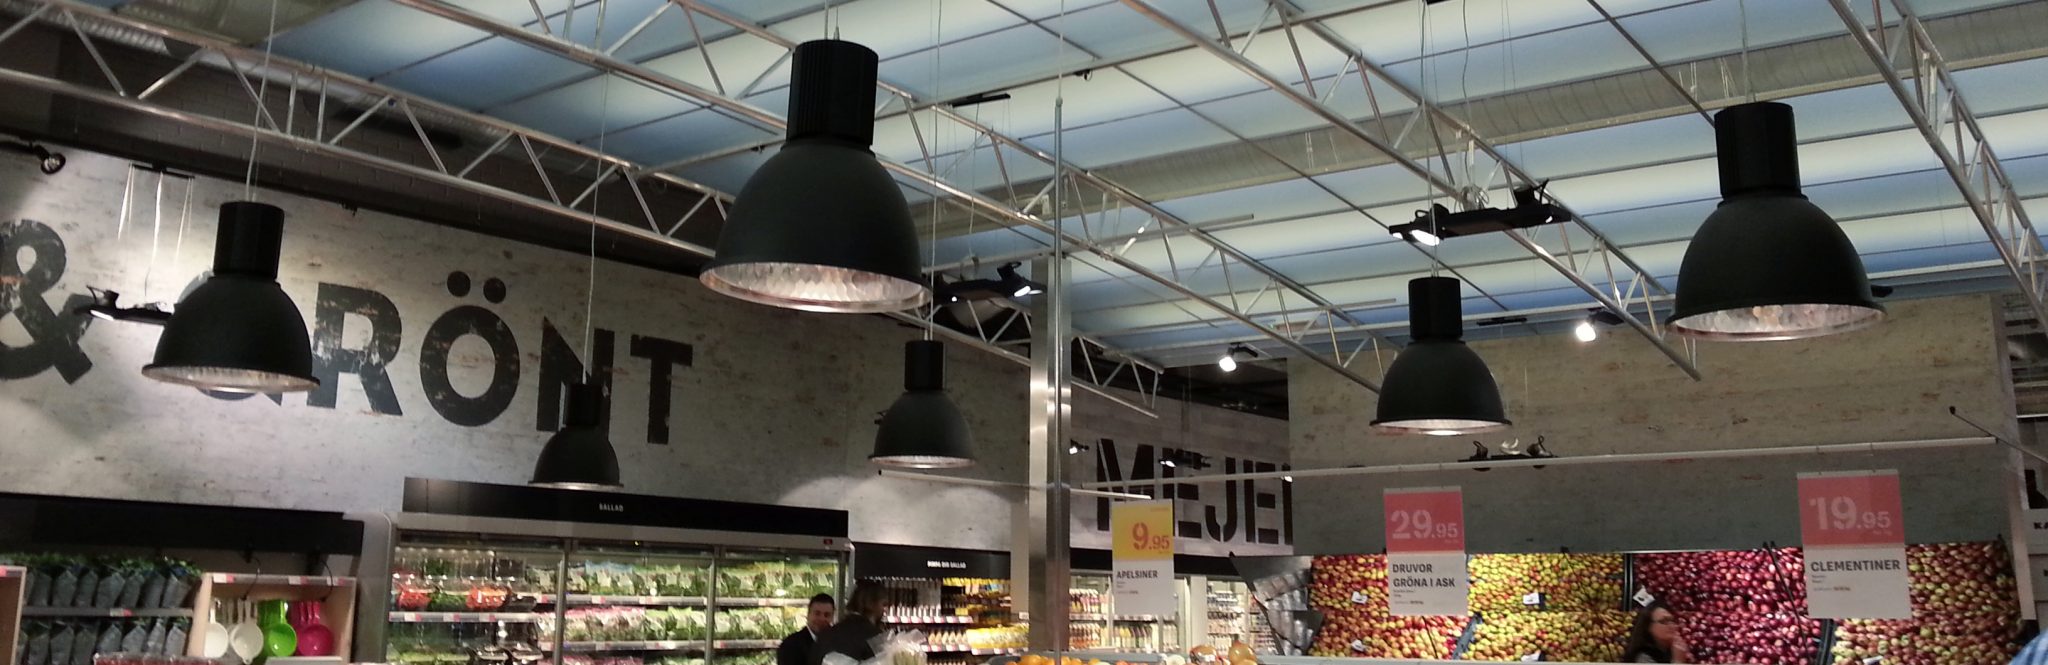 LED-panel för butik och dagligvaruhandel. 